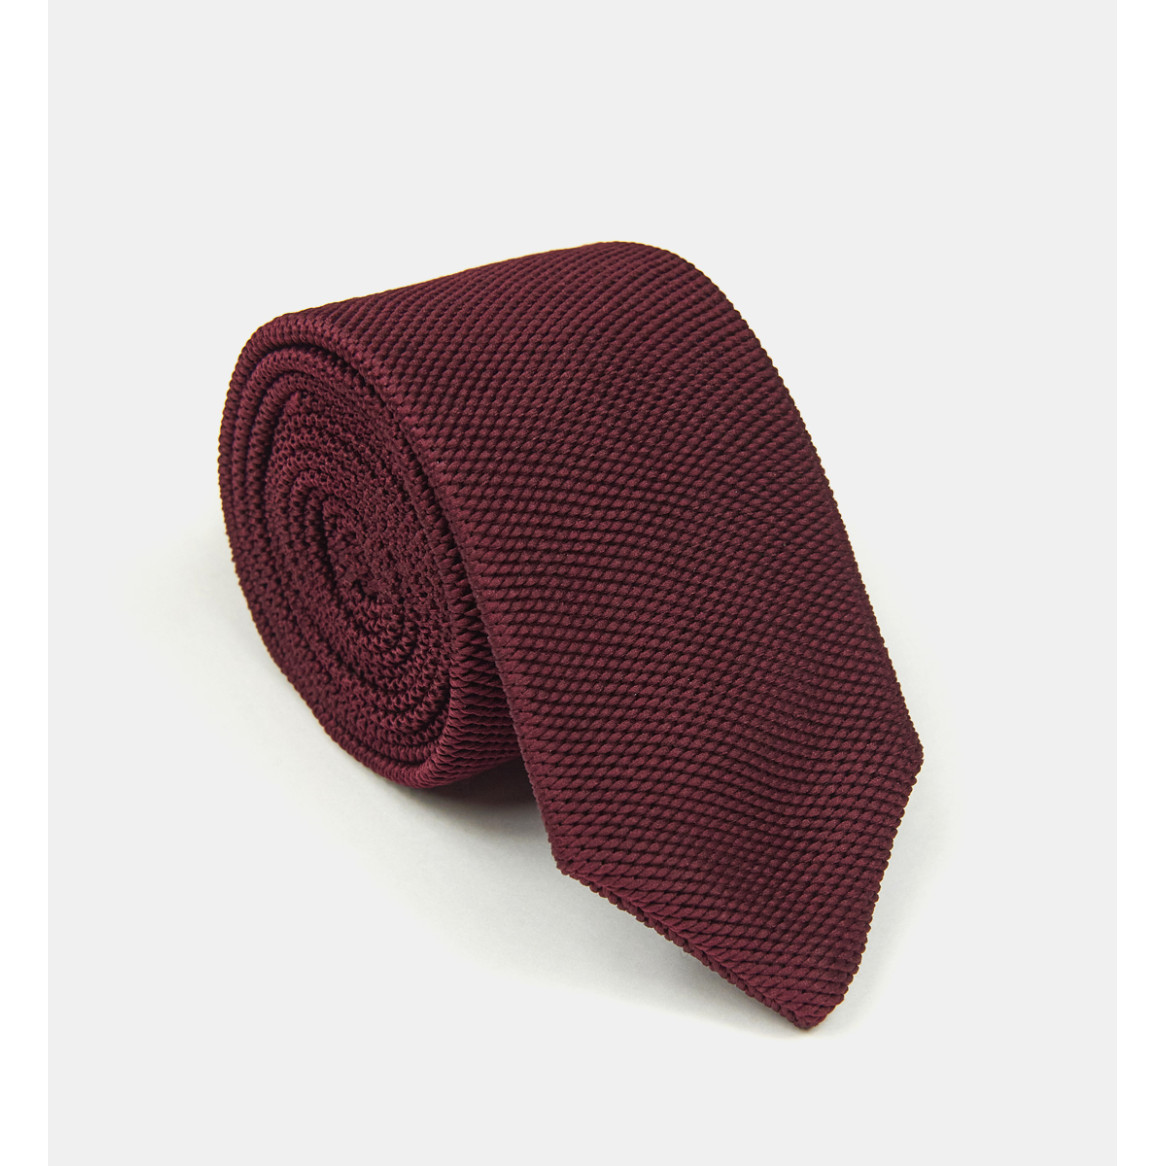 Cravate bordeaux en tricot